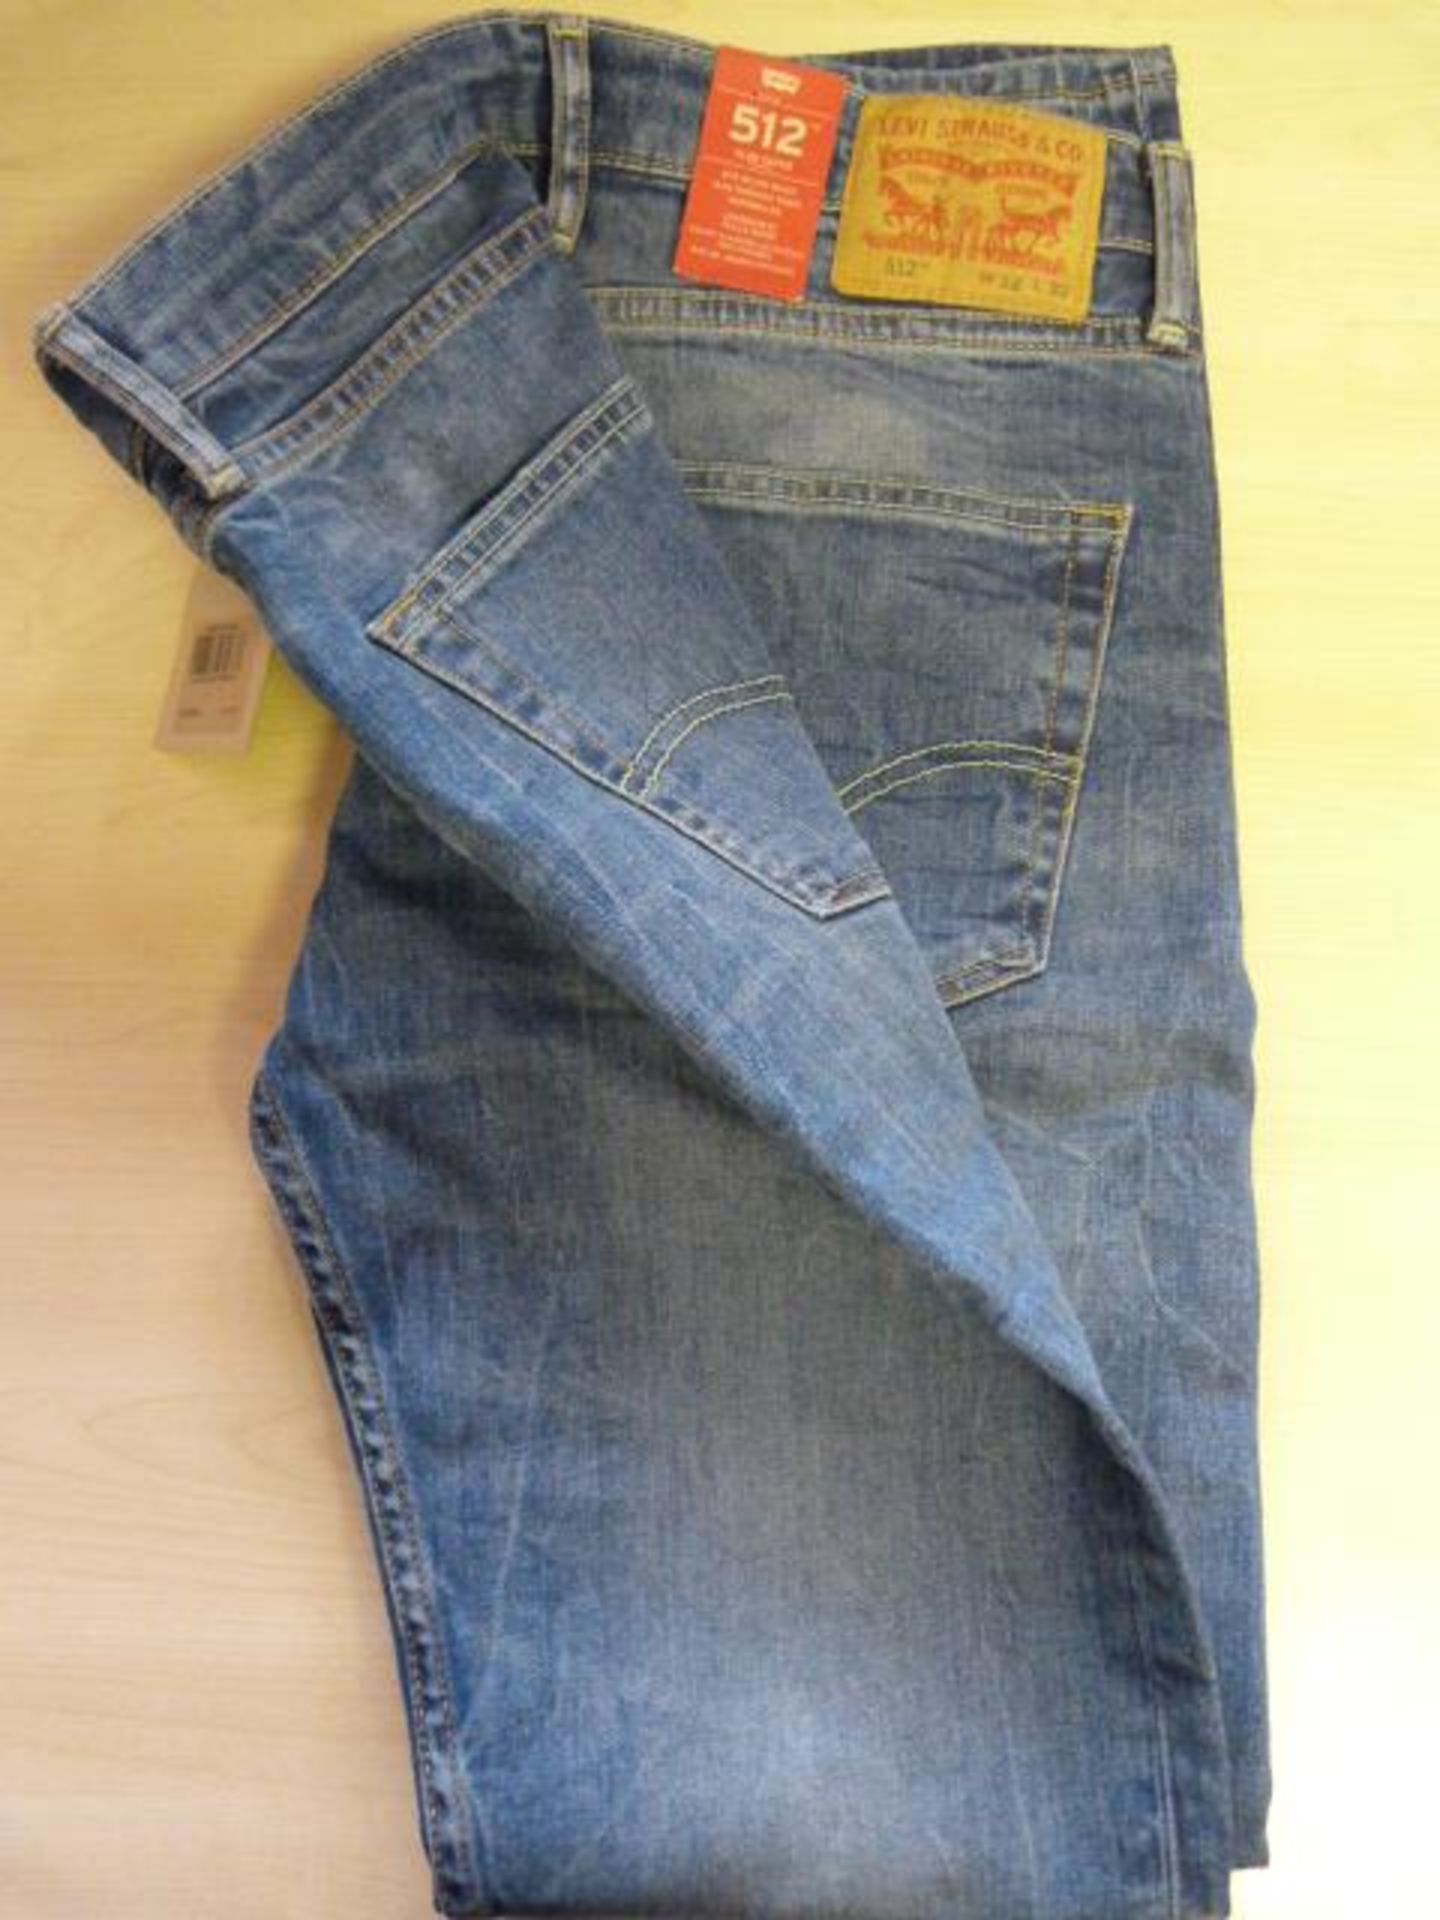 *Levi's 512 Slim Taper Jeans Size: 32/32 (Worn)